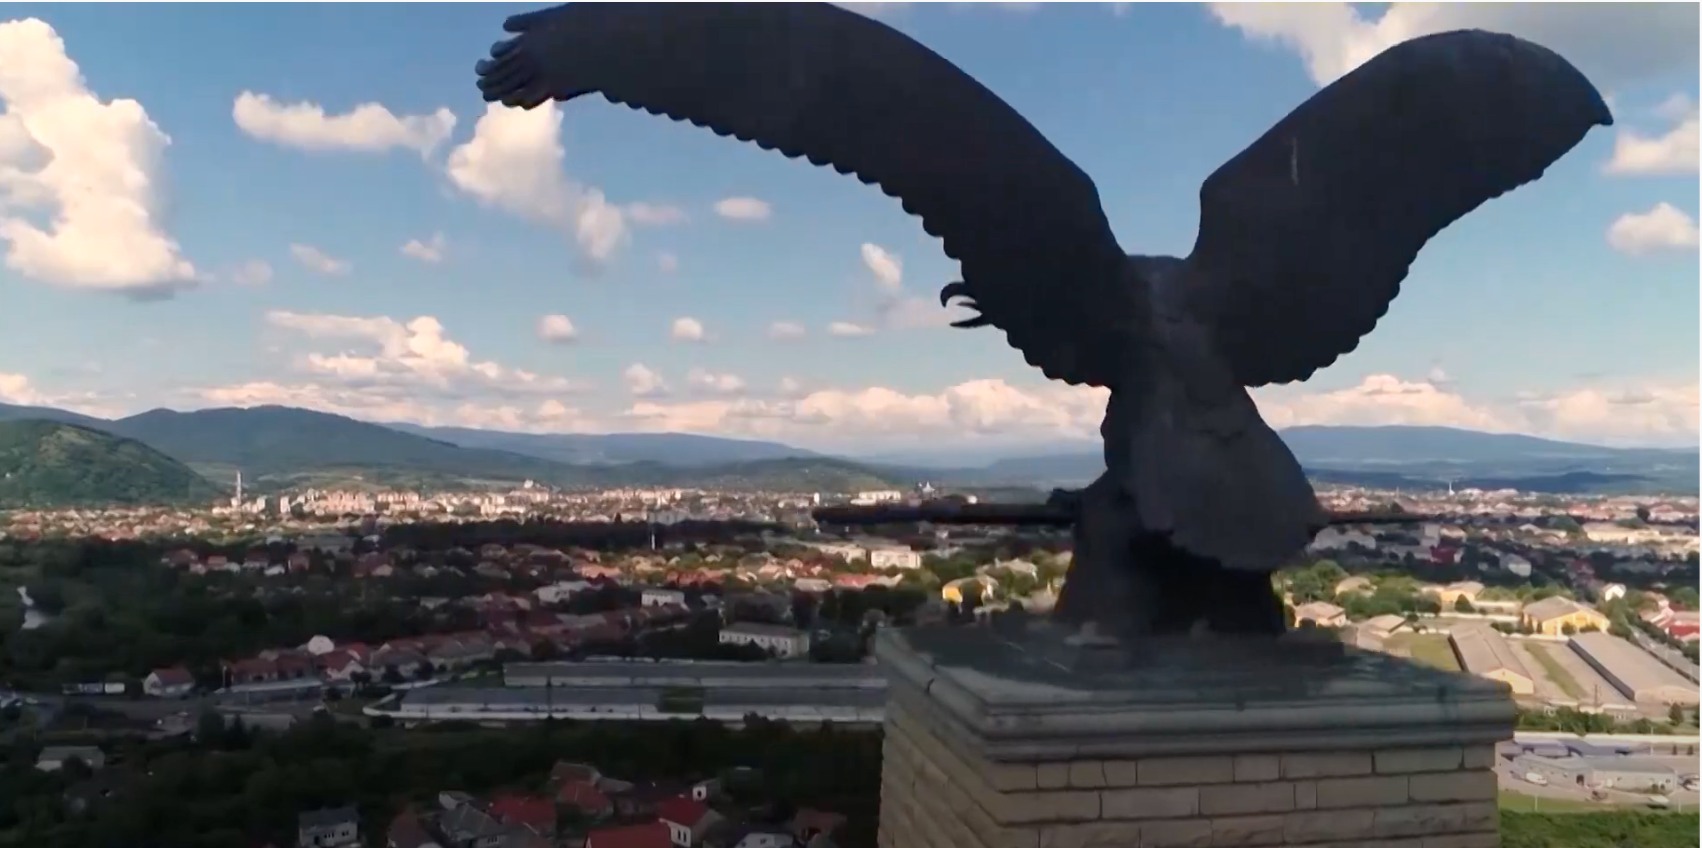 Der mythische Raubvogel der Ungarn wurde vorerst vertrieben